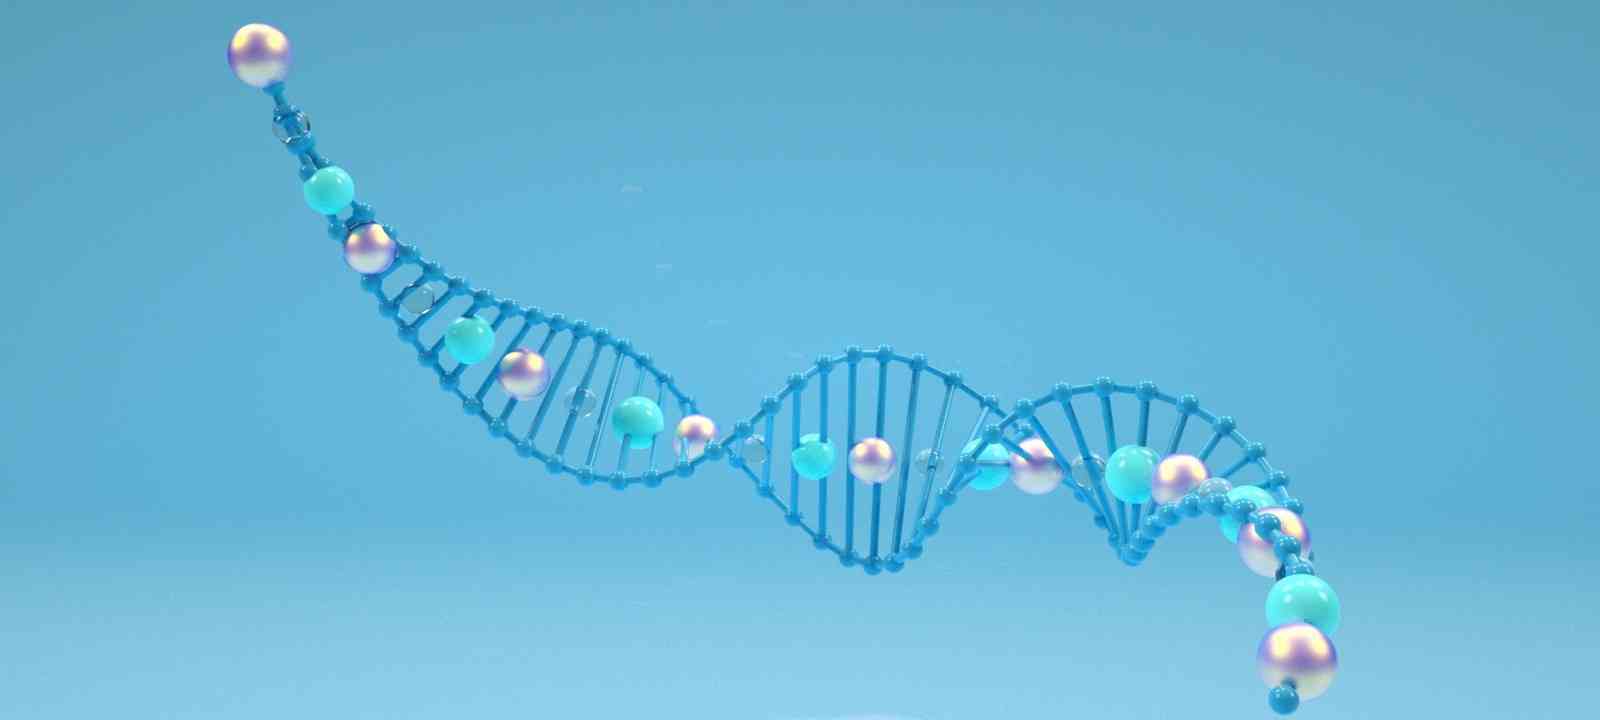 酶免法检测抗双链DNA